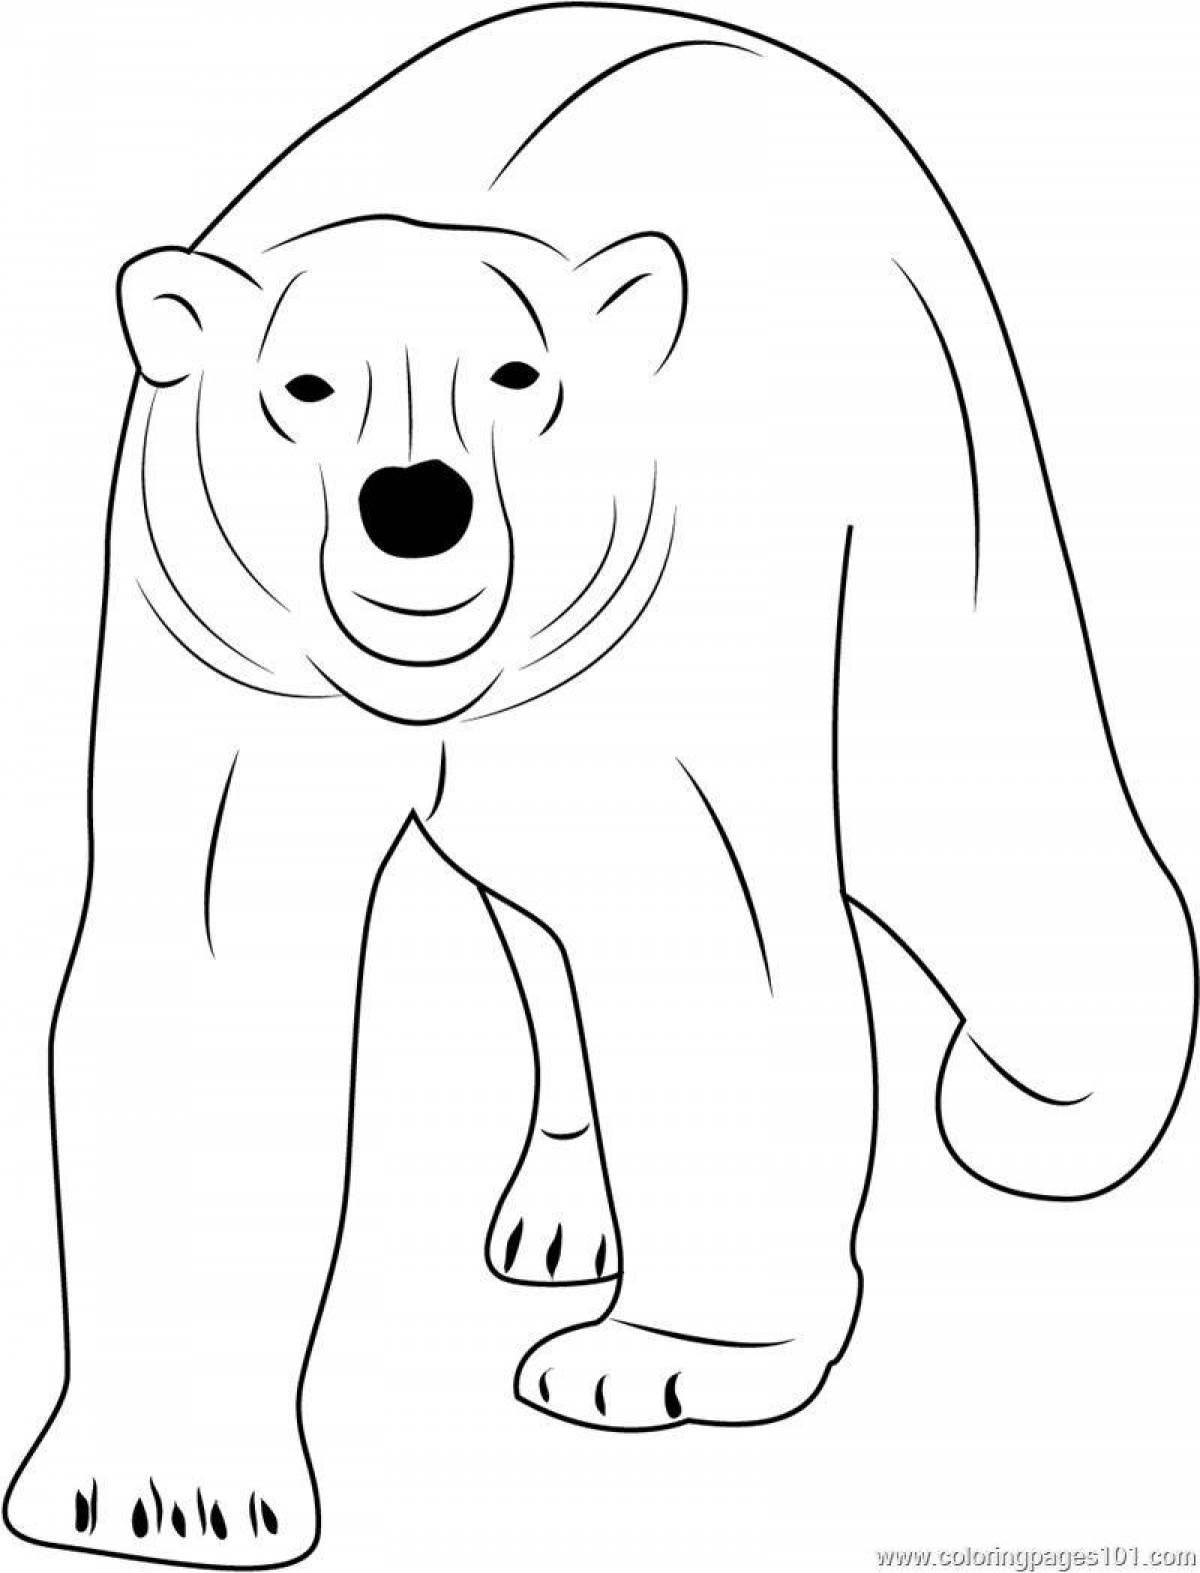 Милая раскраска белого медведя для дошкольников